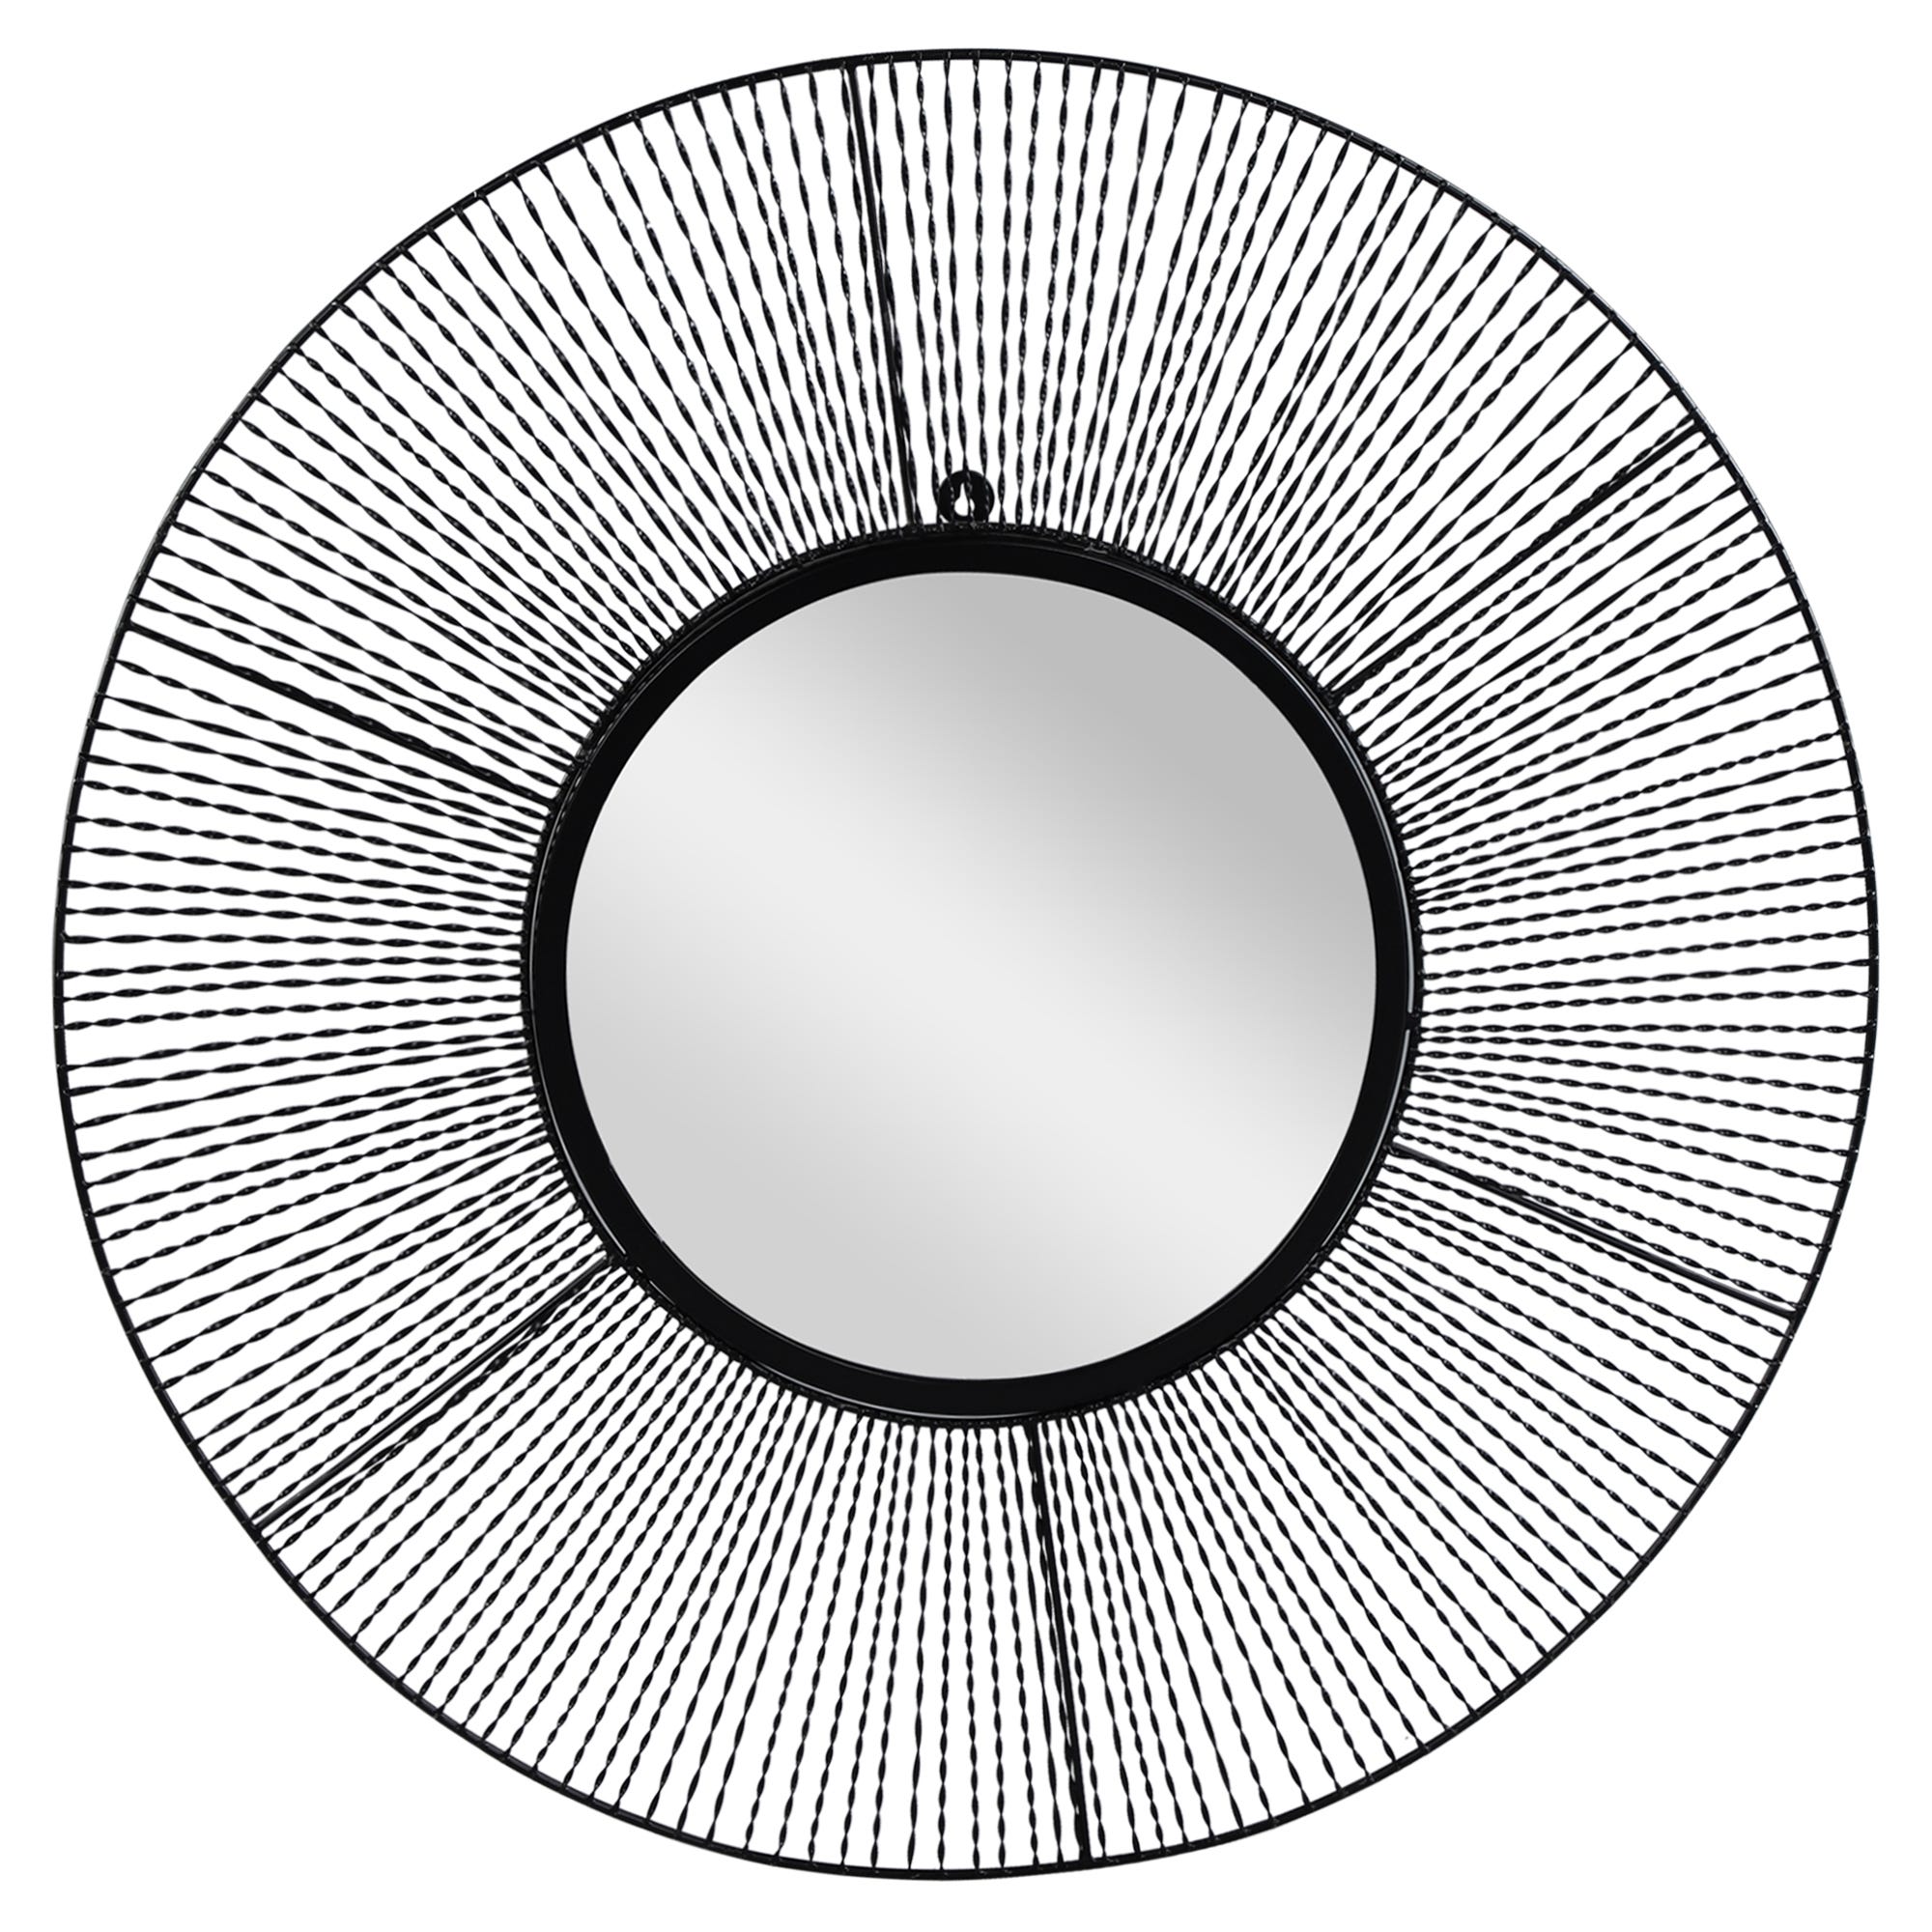 MIROIR convexe dans un cadre circulaire mouluré à motifs…